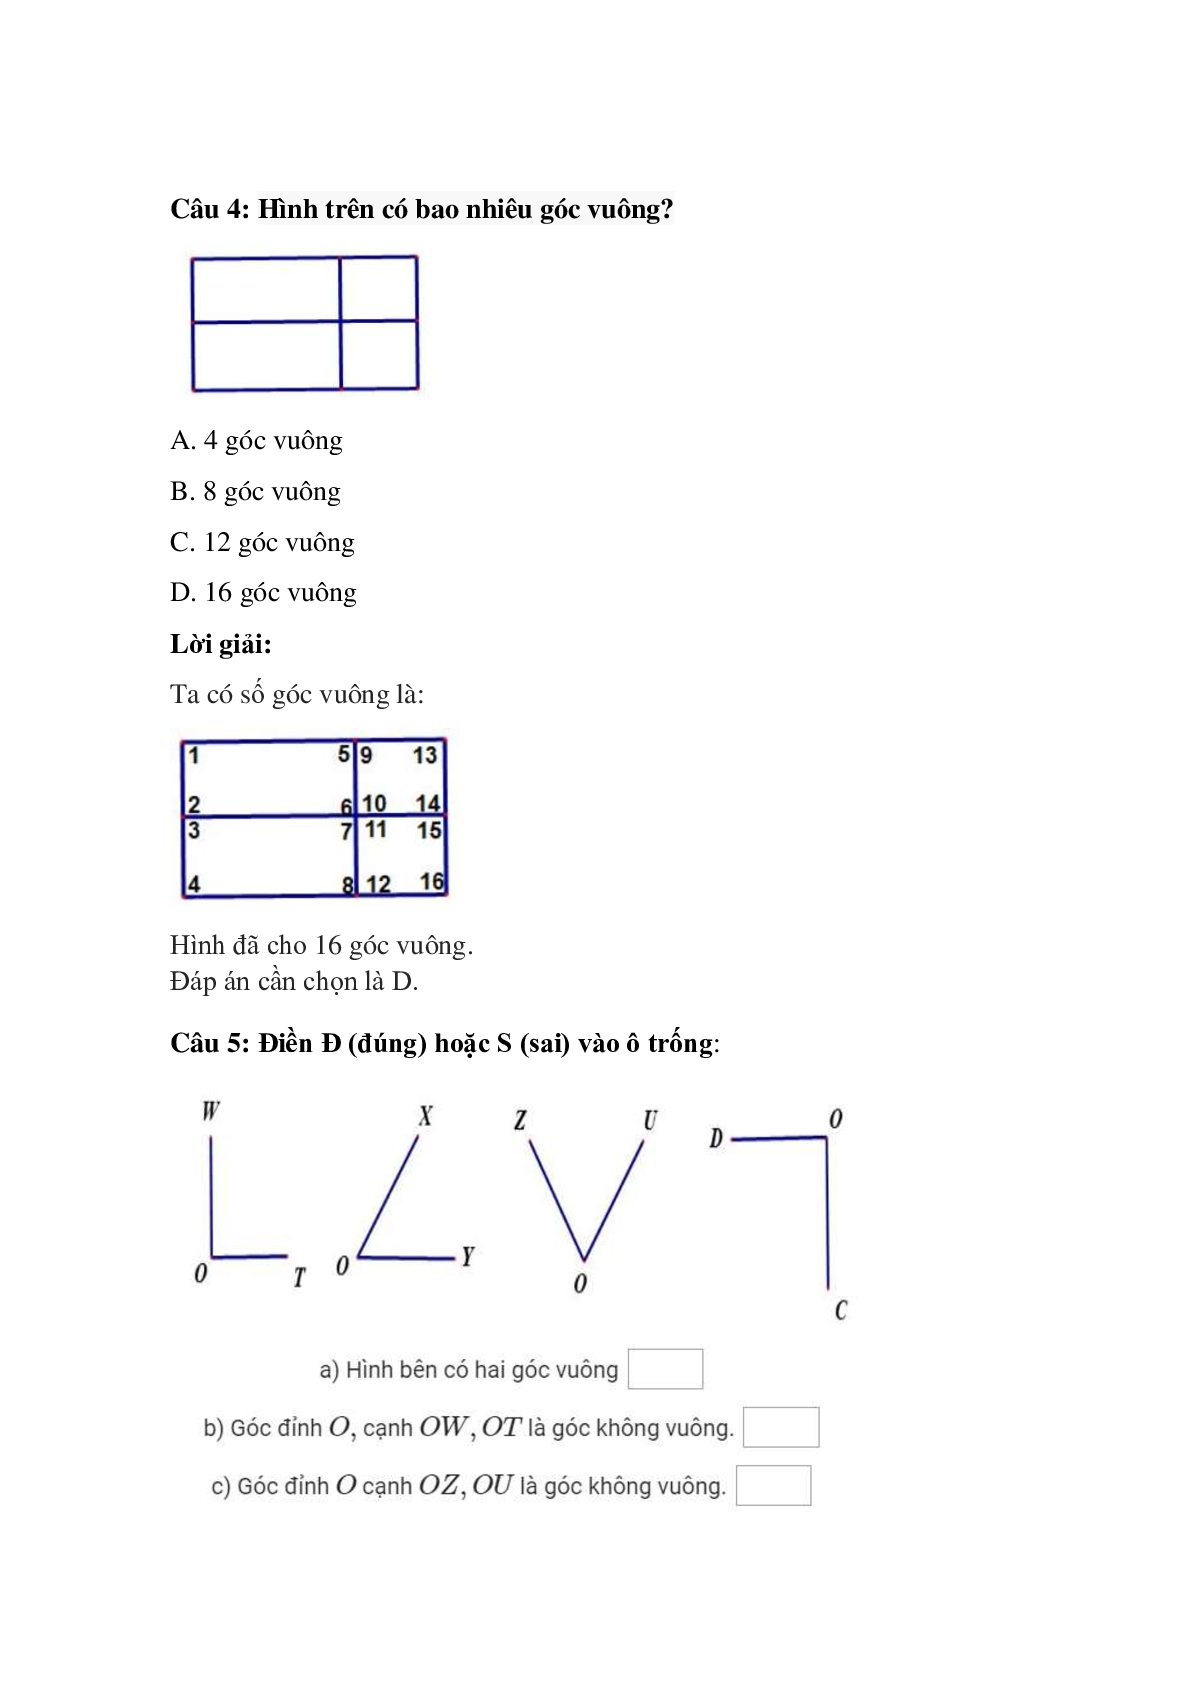 Trắc nghiệm Góc vuông, góc không vuông có đáp án – Toán lớp 3 (trang 3)